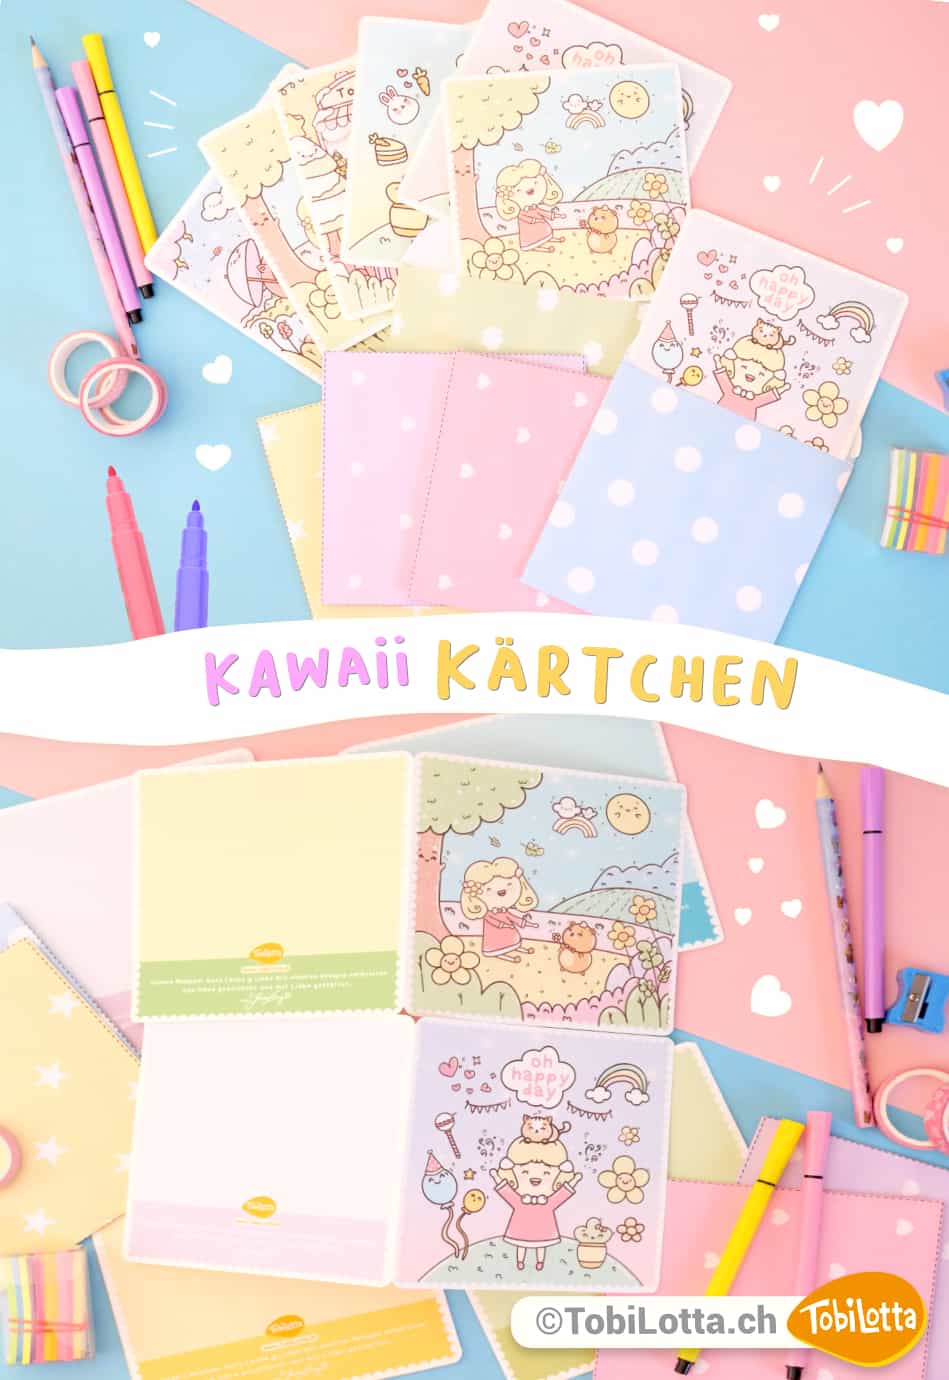 Kawaii-glückwunschkarten-kaufen-herunterladen-ideen-basteln-zeichnen-zeichnung-Glückwunschkarten-sticker-selbermachen-basteln-vorlage-zum-ausdrucken-diy